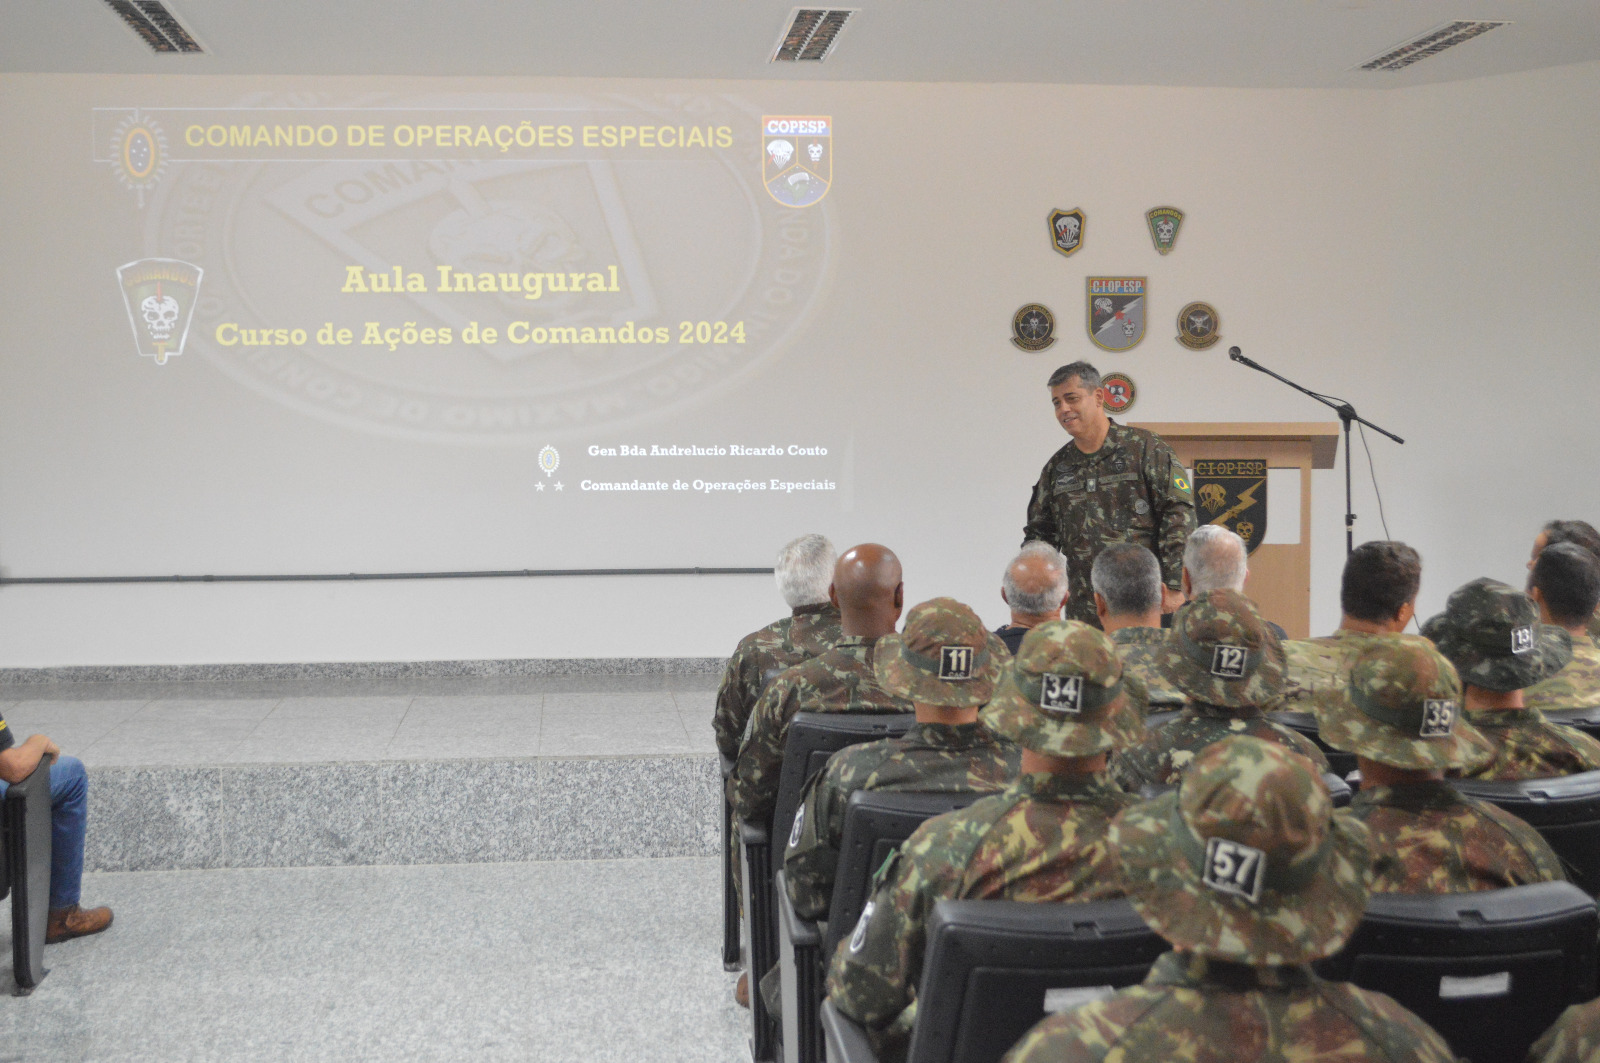 File:Ministro da Defesa visita Comando de Operações Especiais do exército  em goiânia-GO (44840067235).jpg - Wikimedia Commons